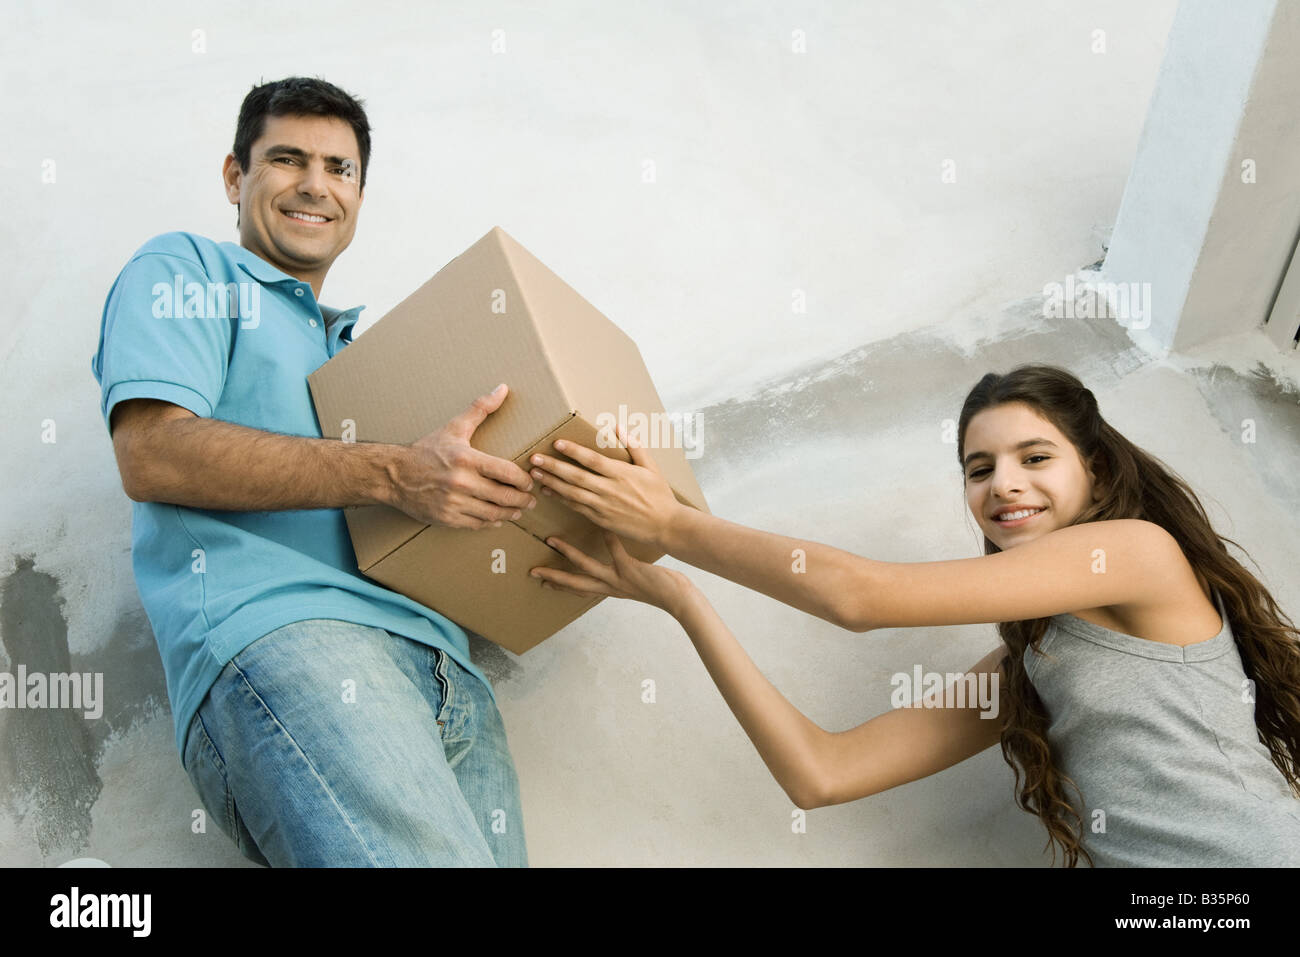 Père et fille déménagement boîte carton ensemble, low angle view Banque D'Images